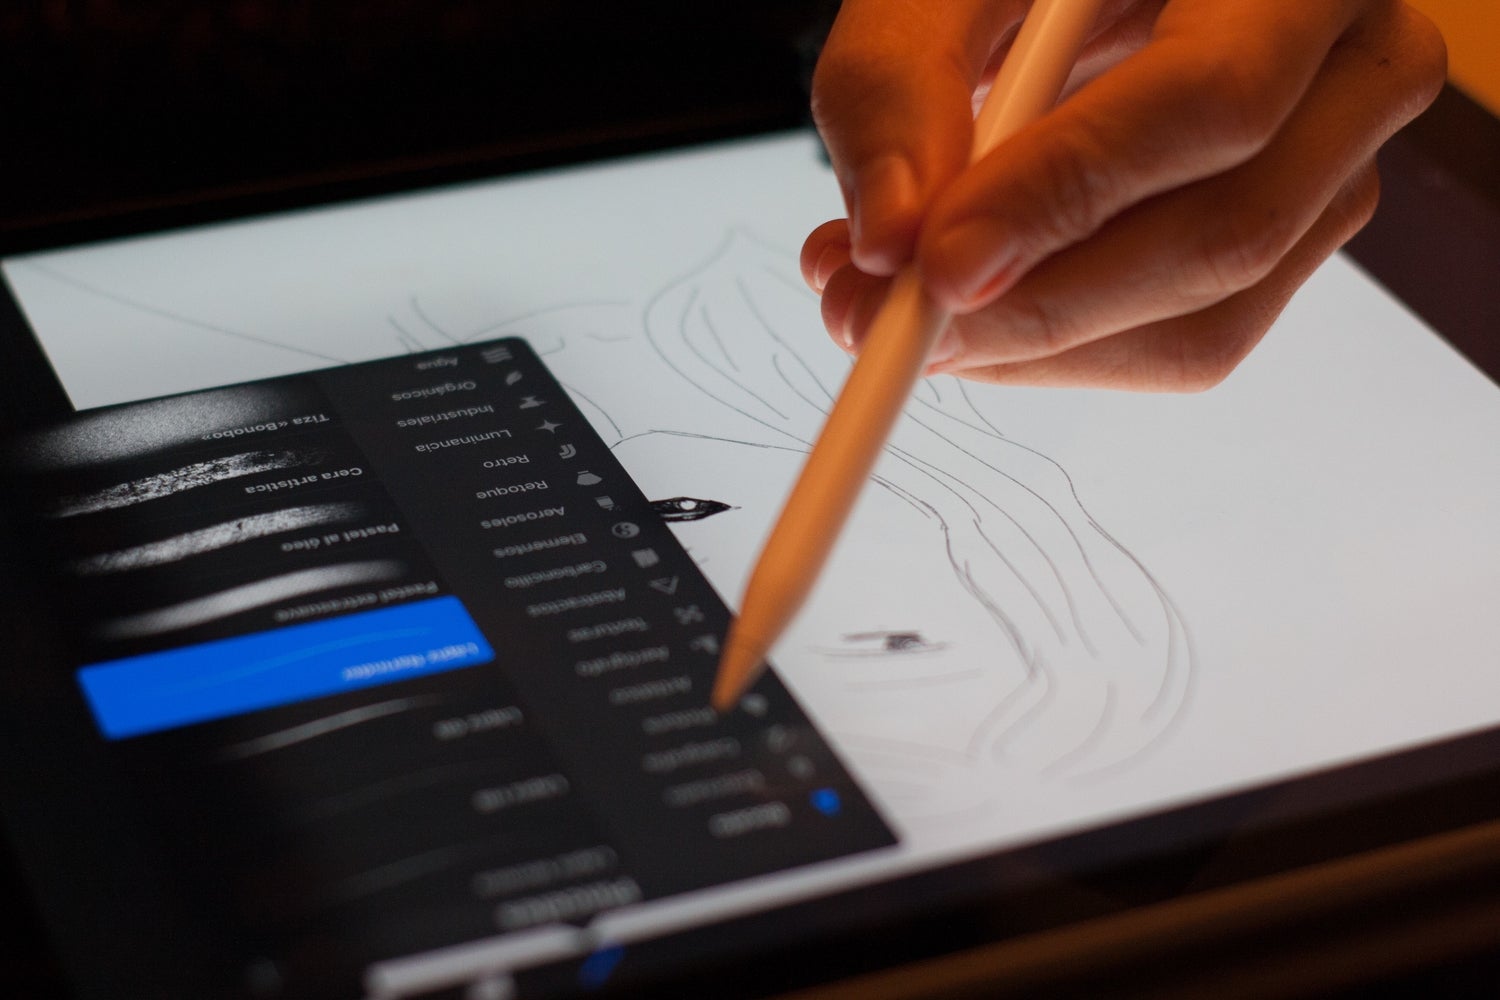 Рука, использующая iPad со стилусом во время рисования и использования Adobe Photoshop.